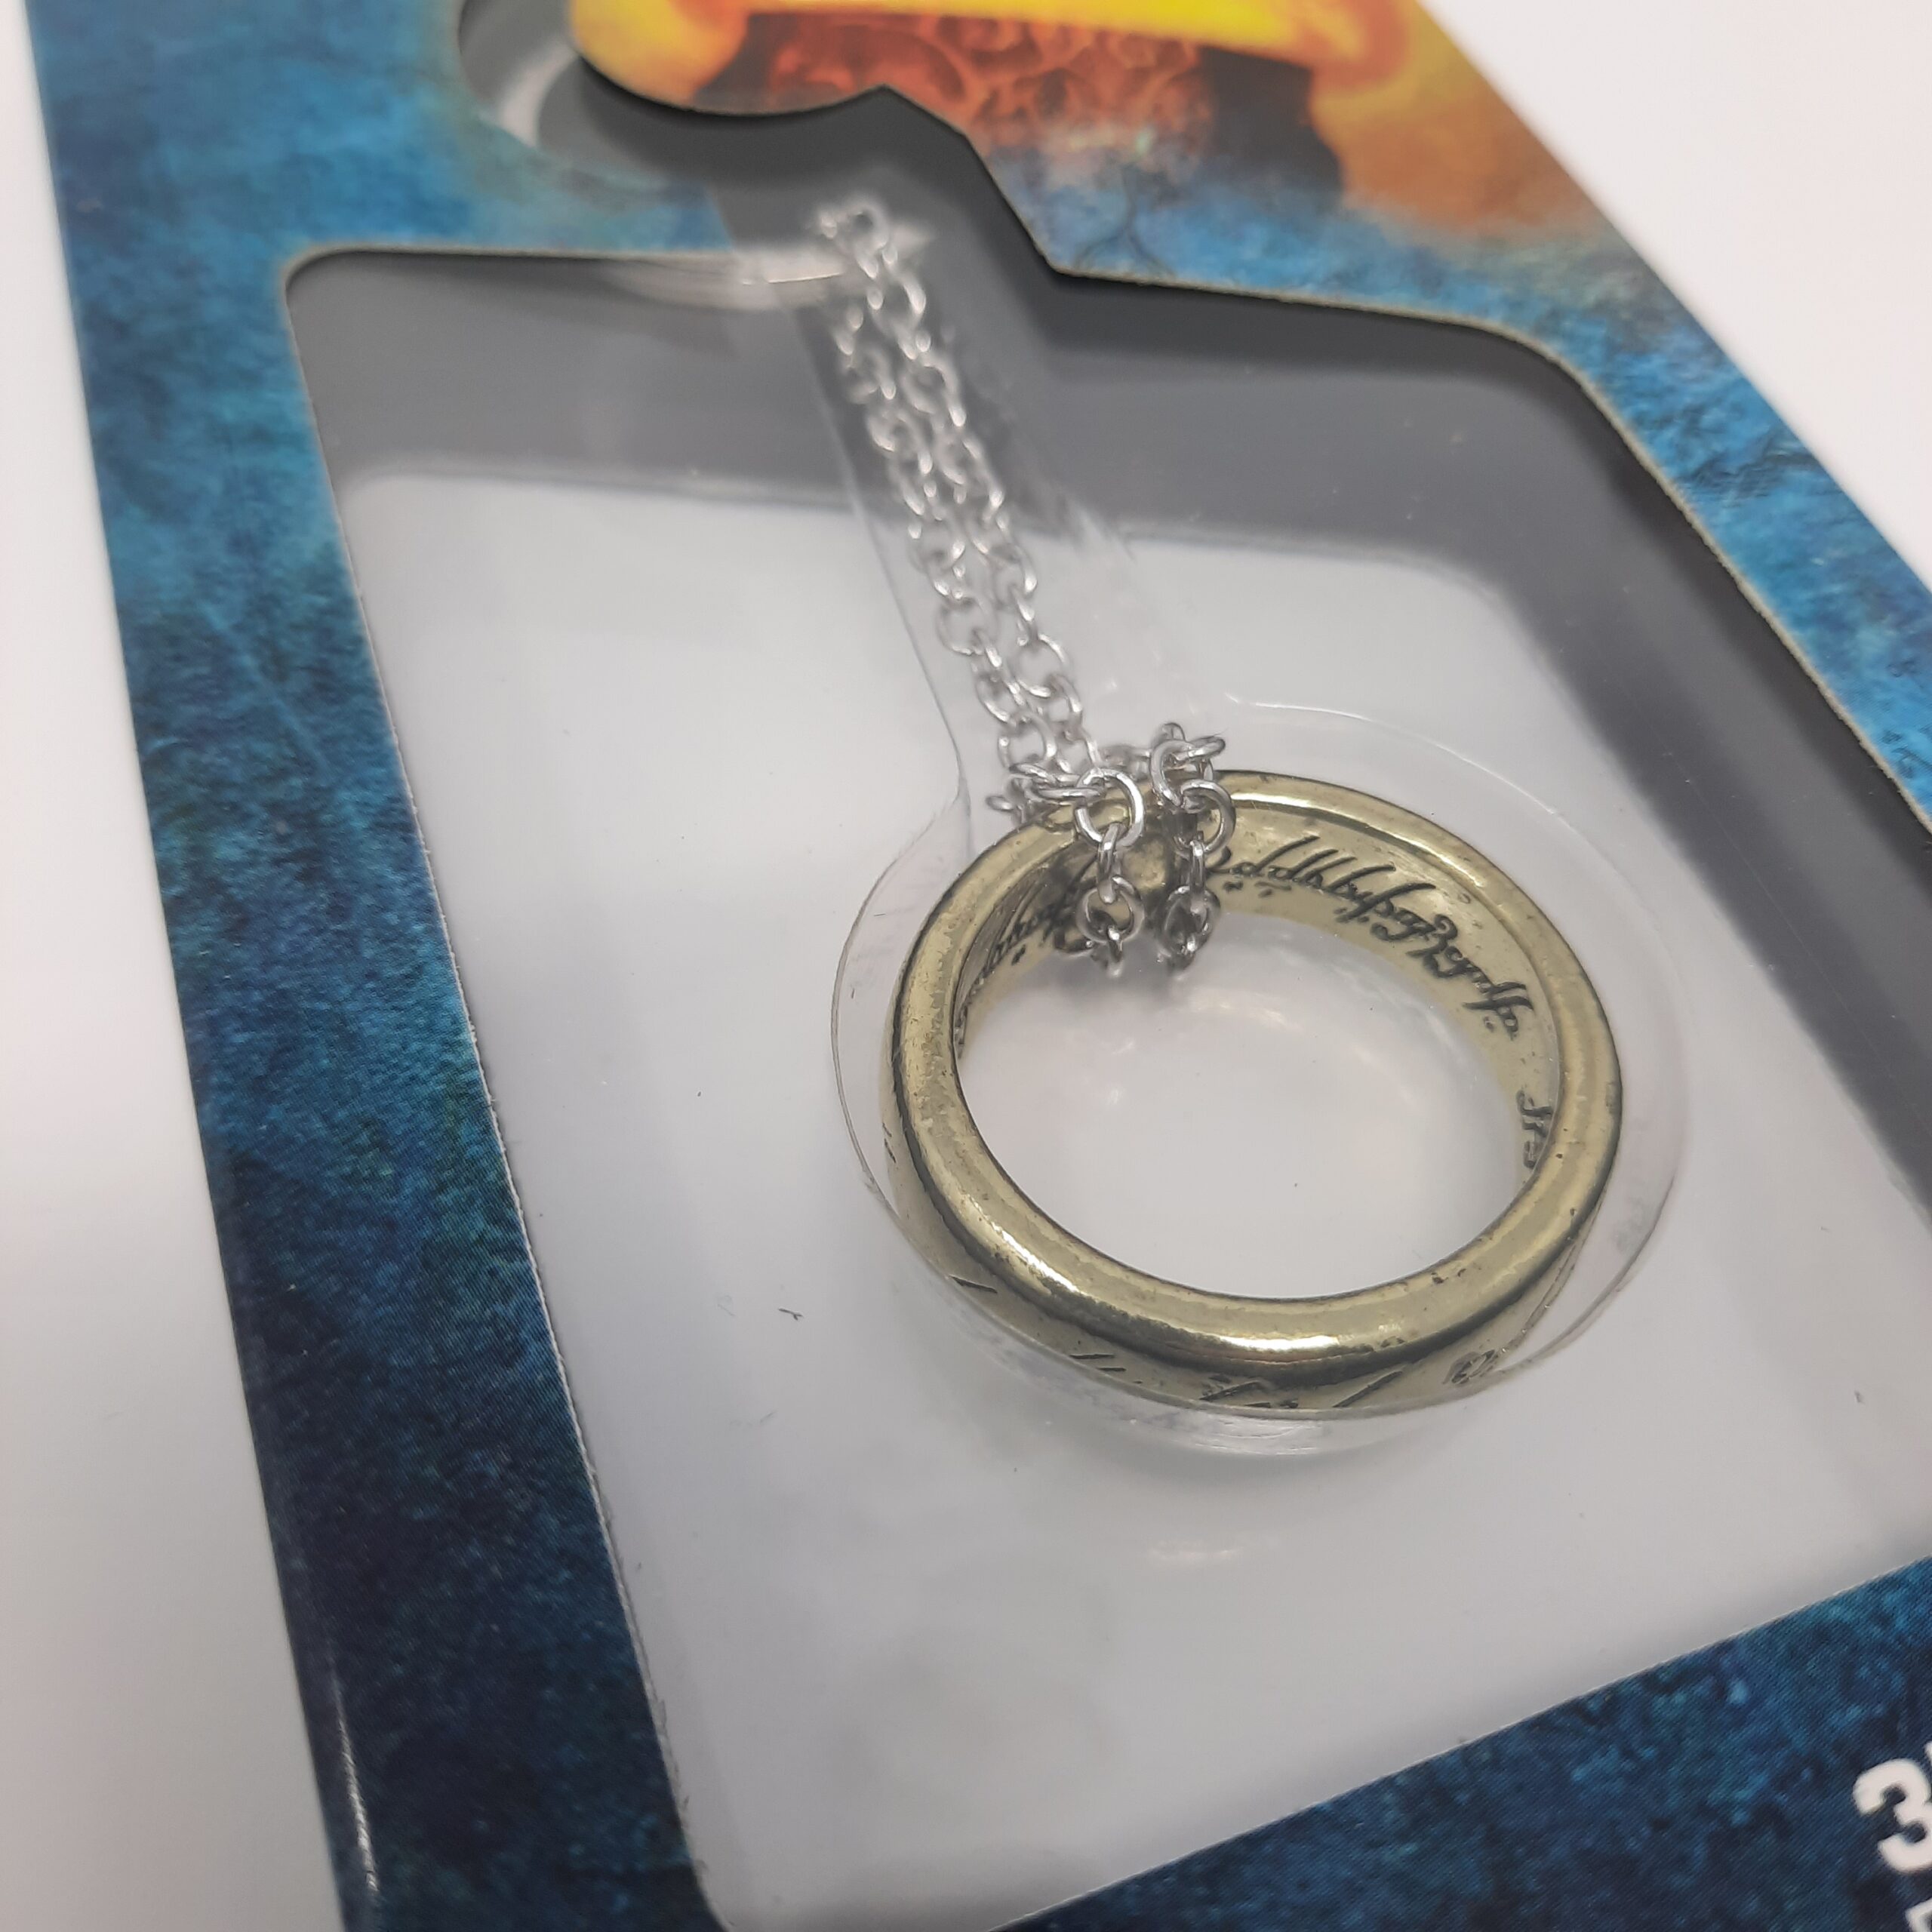 Figuren Nerdmagnet RINGE 3D – Merchandise Anime Gaming “Ring” HERR – und Schlüsselanhänger – DER